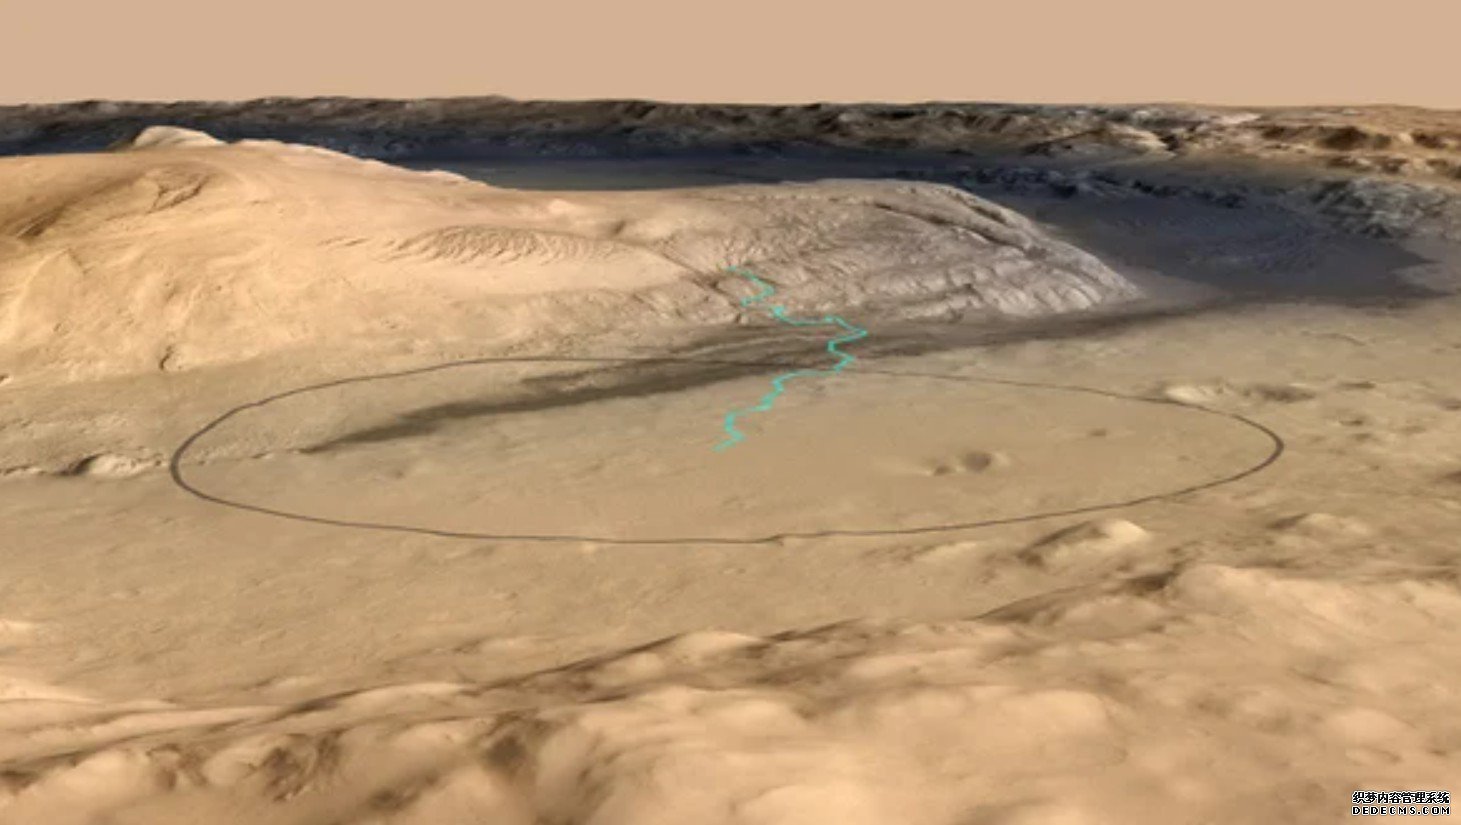 火星上一英里高的土堆之谜:杏耀答案在风中飘荡